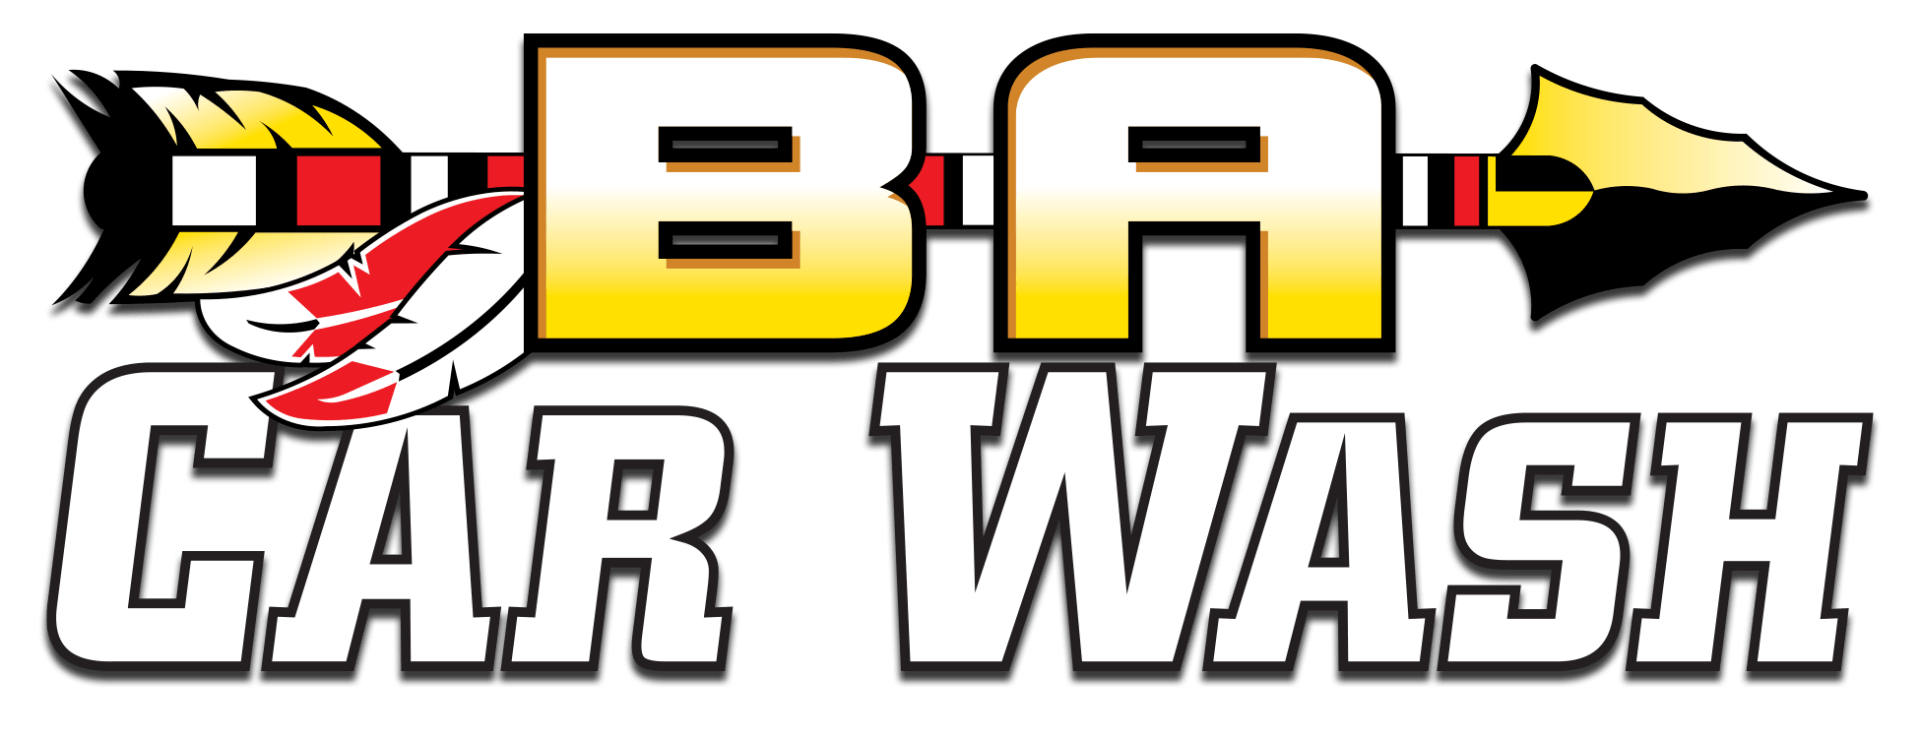 BA Car Wash Logo with BA over the Arrow.